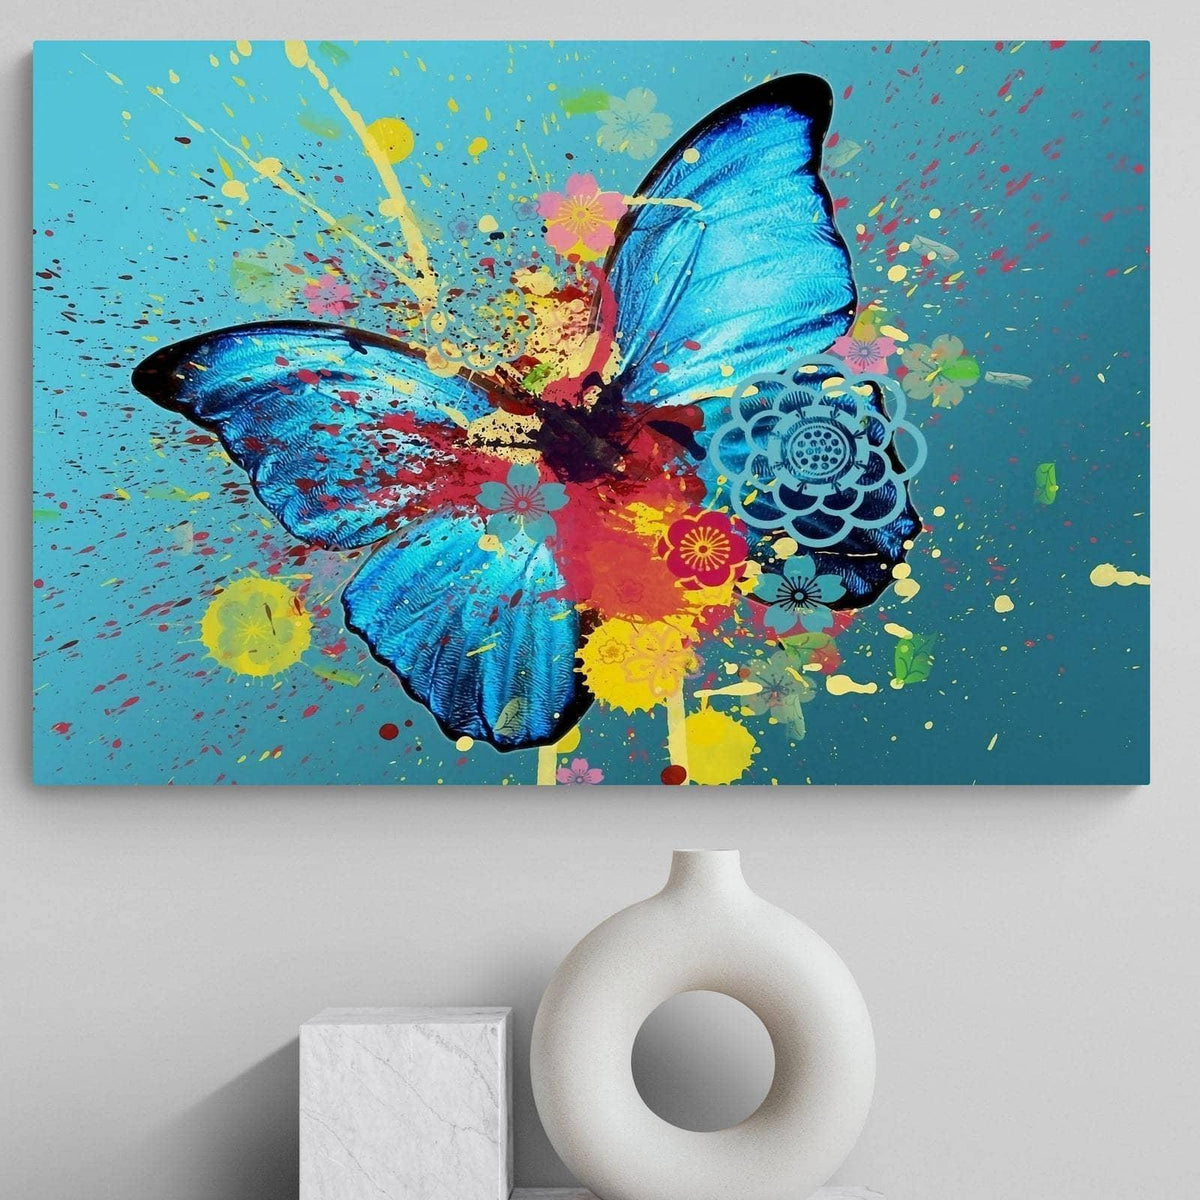 Luxe bleu or papillon Impression sur Toile Affiche Decoration